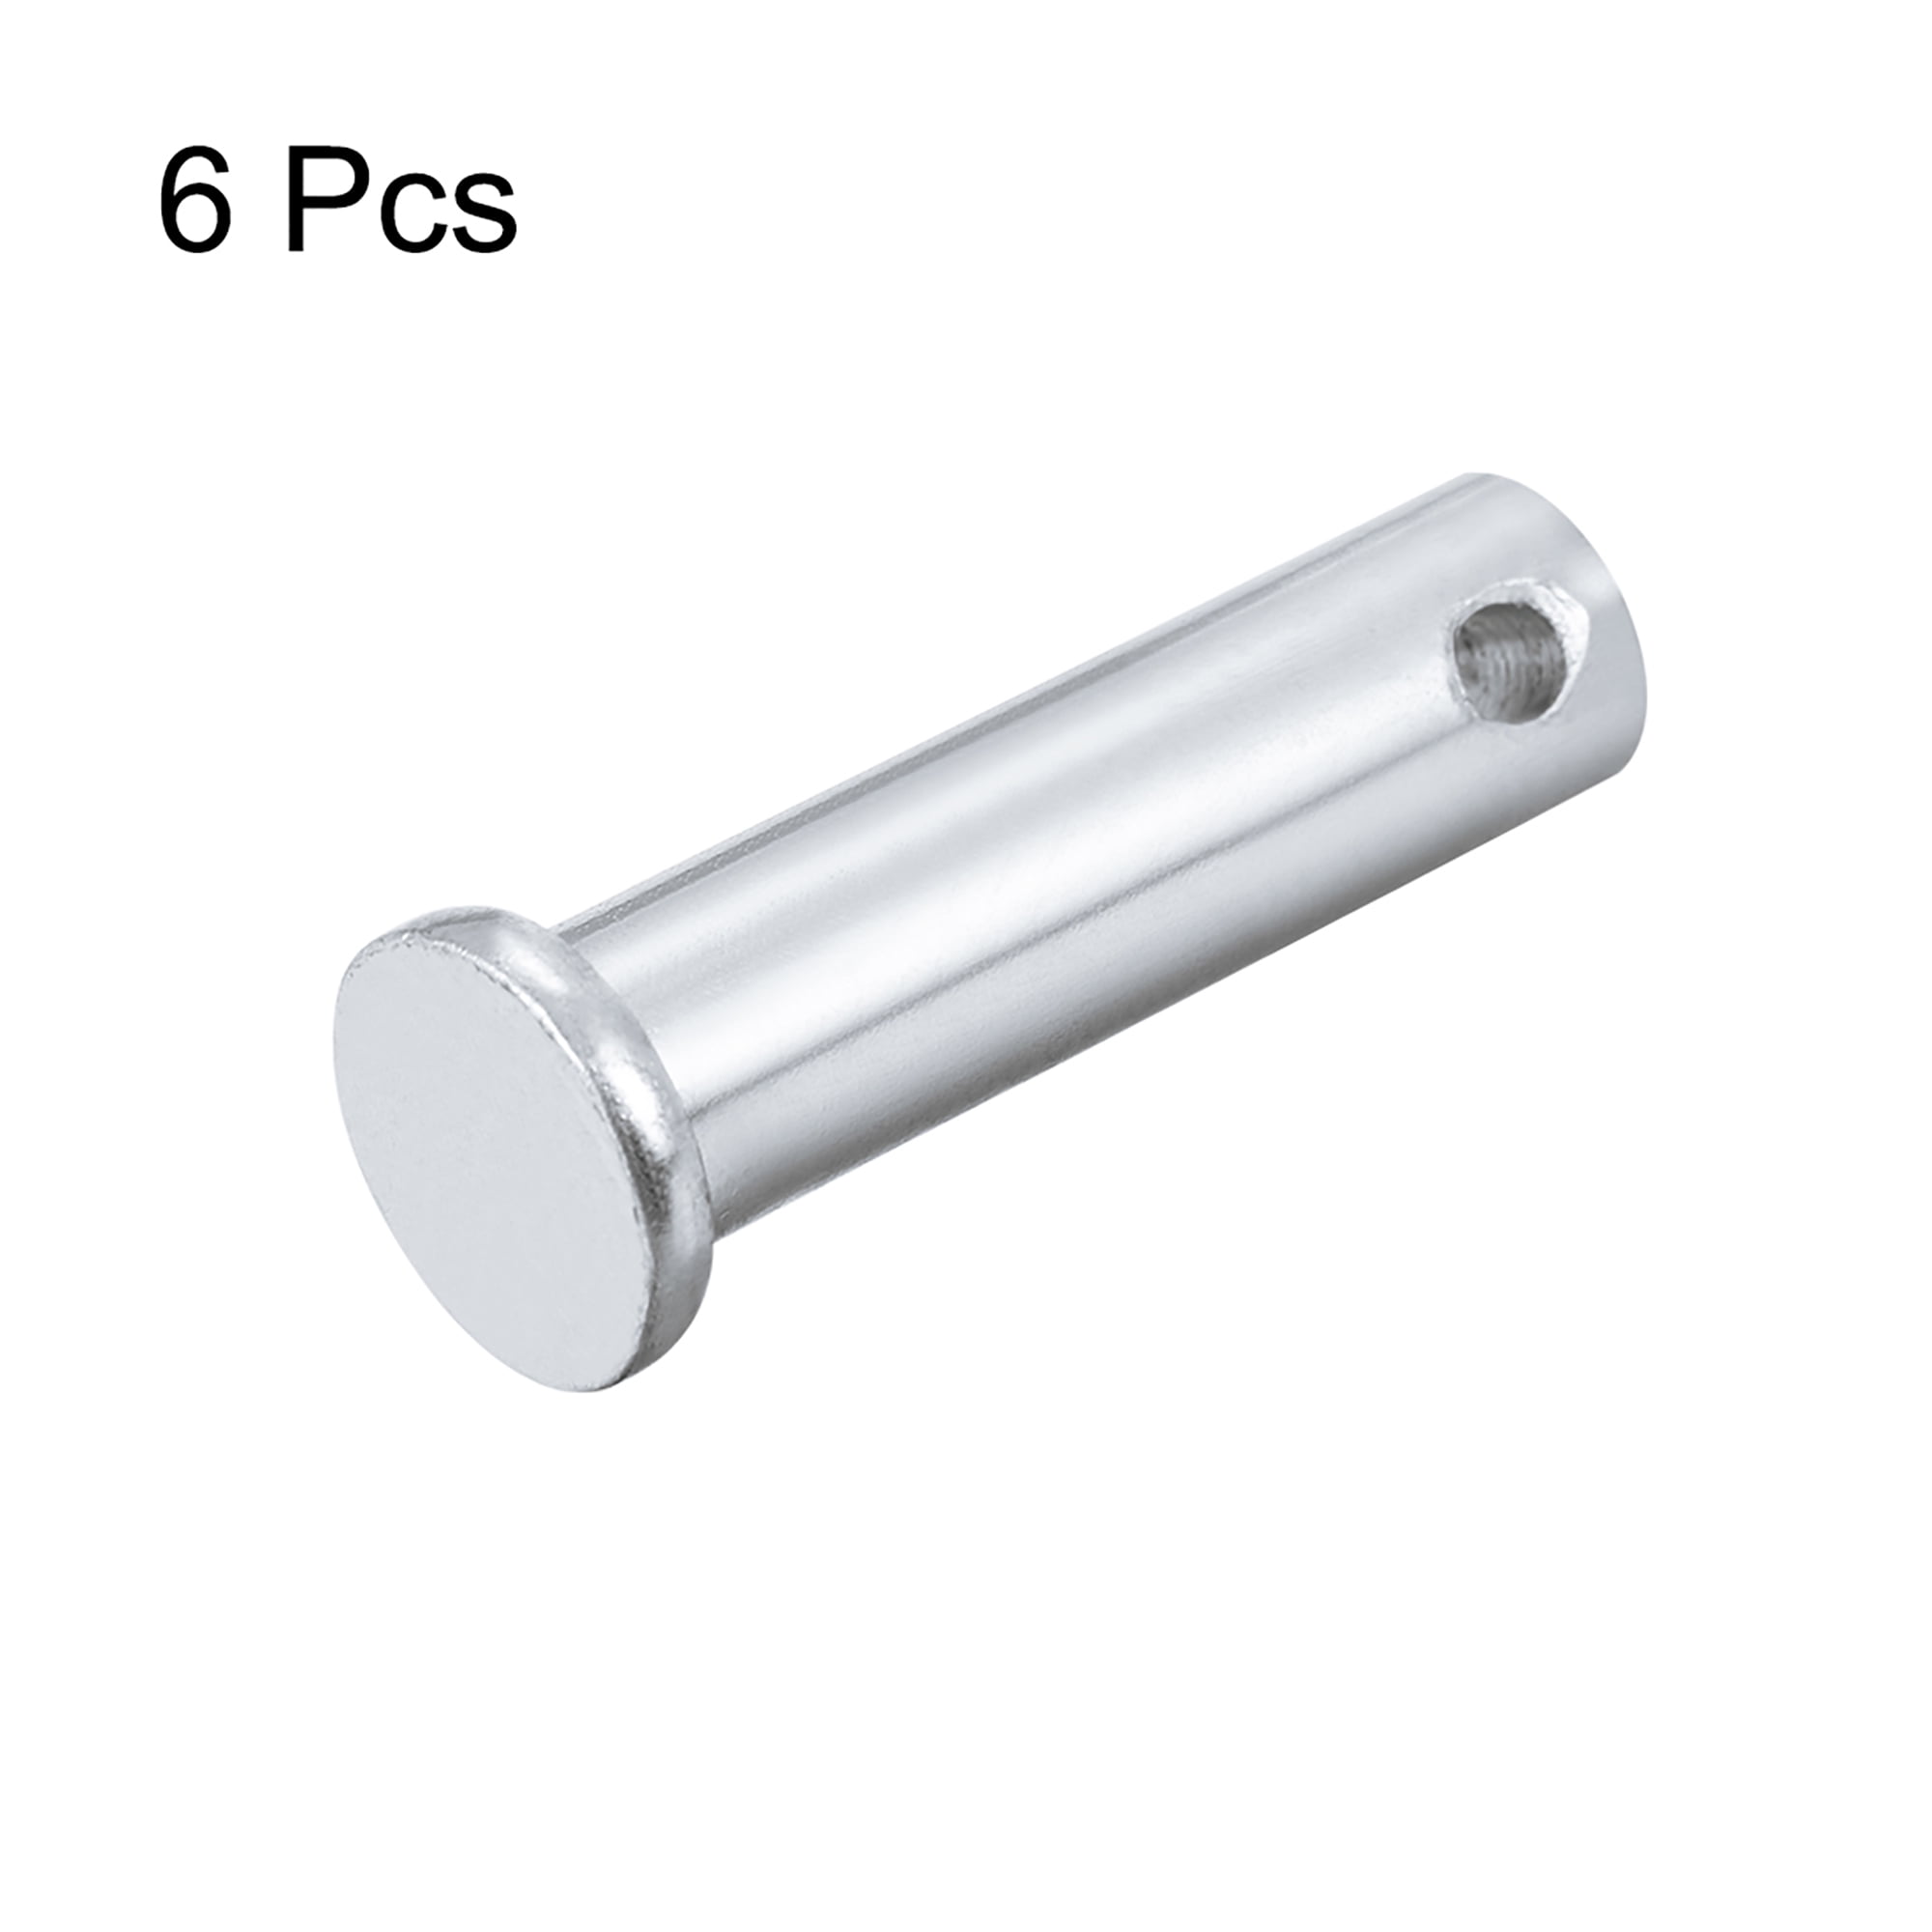 Single Hole Clevis Pins 10mm x 35mm Flat Head Zinc-Plating Solid Steel Pin 6Pcs 